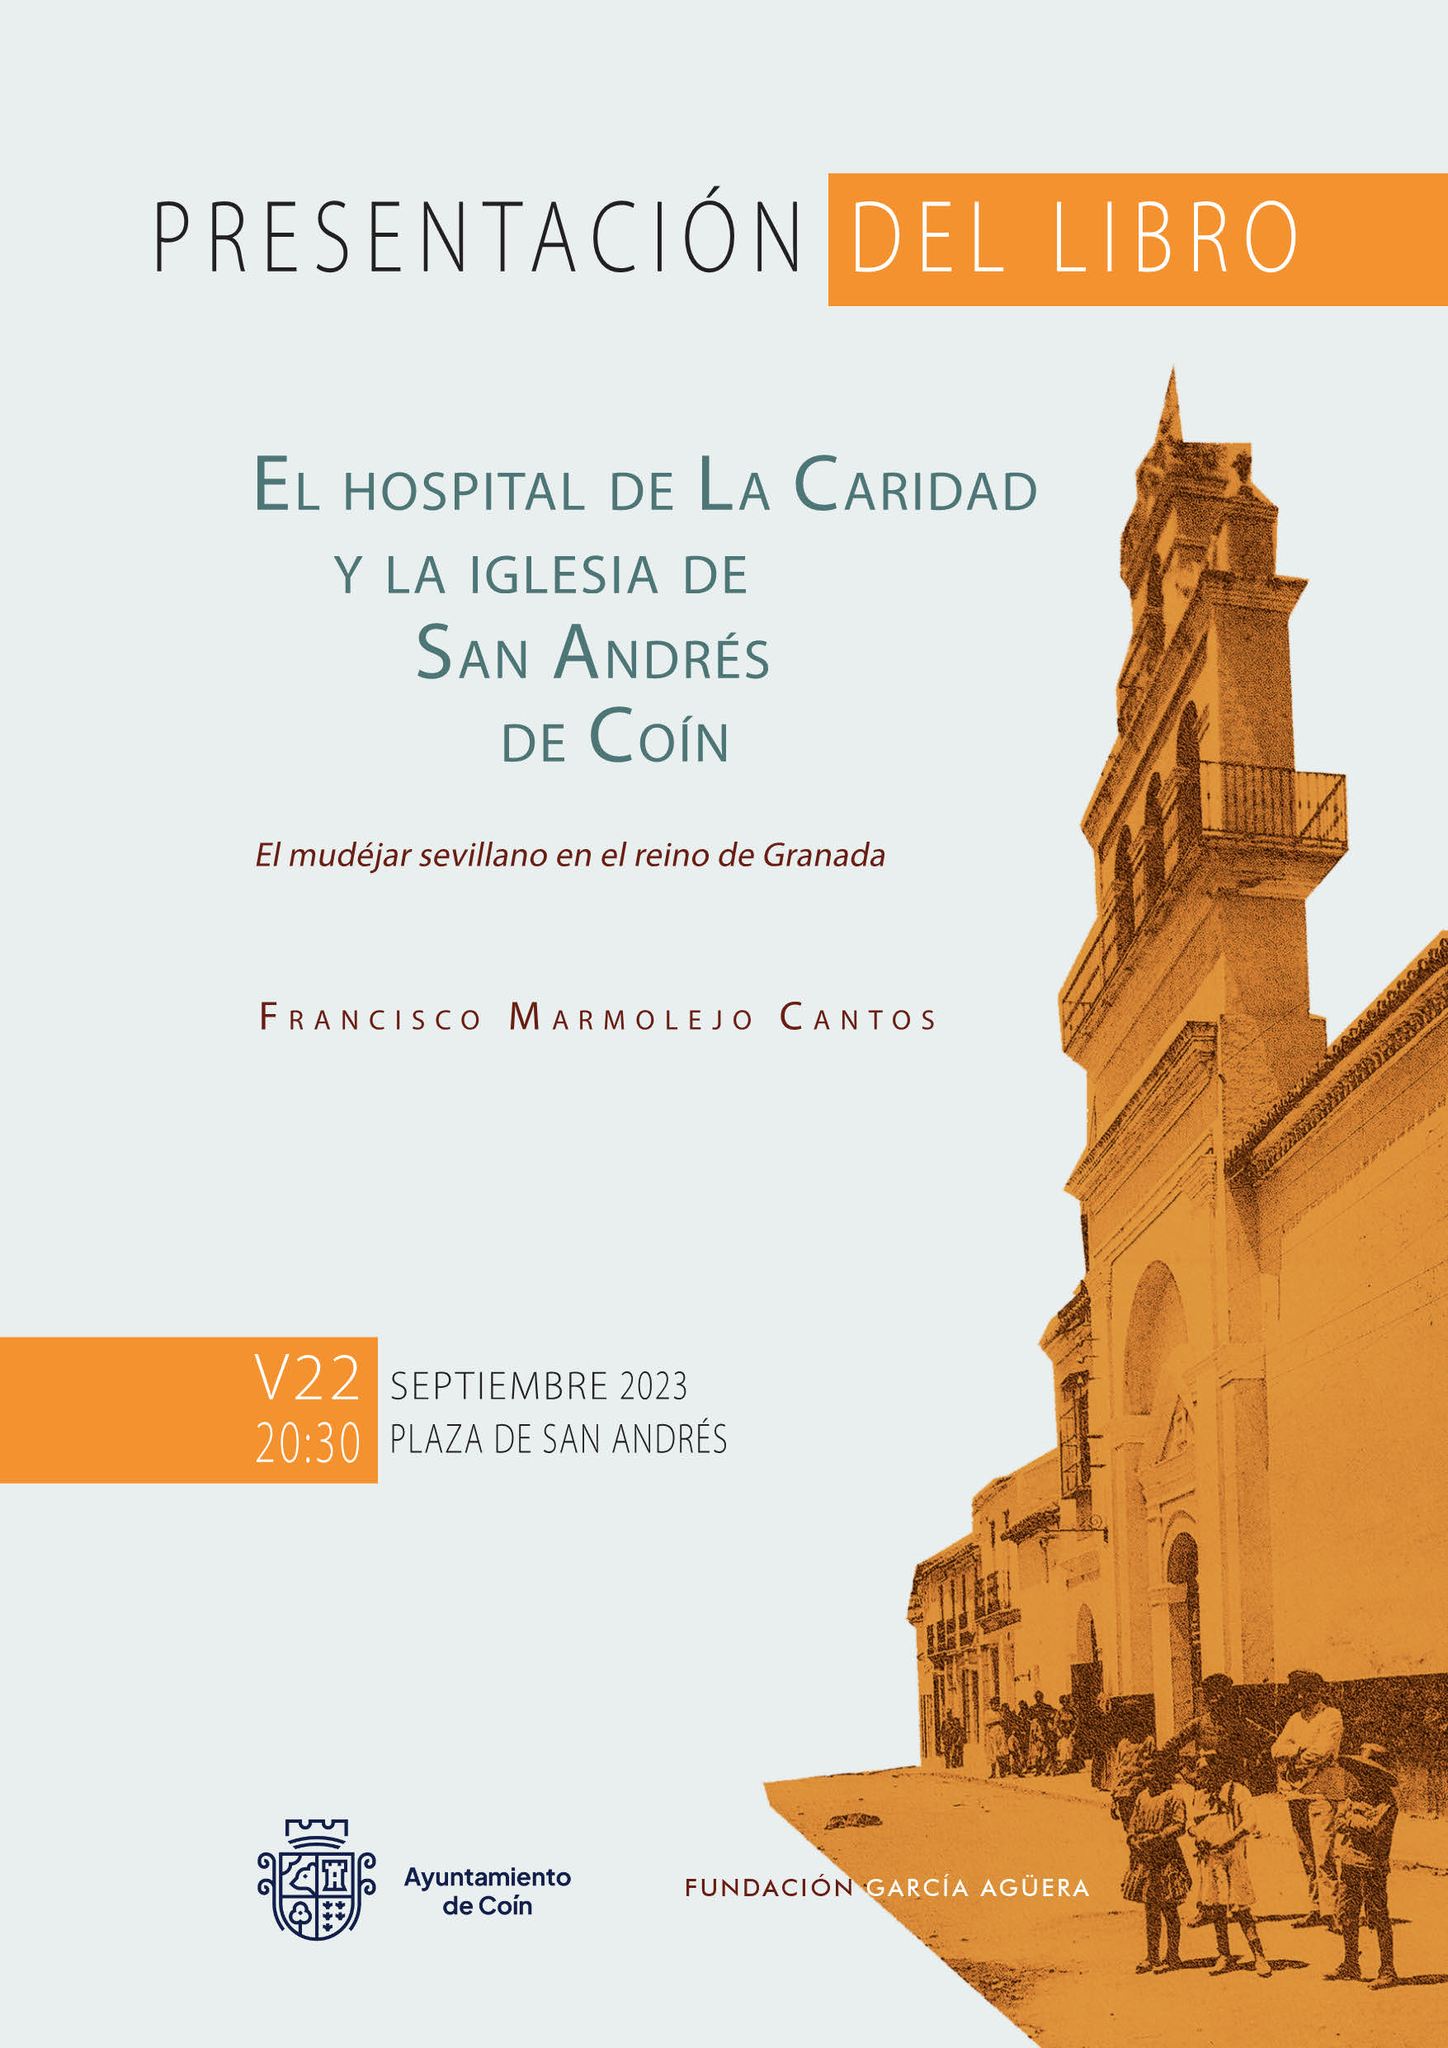 PRESENTACIÓN EL LIBRO "El hospital de la Caridad y la iglesia de San Andrés de Coín" de Francisco Marmolejo Cantos